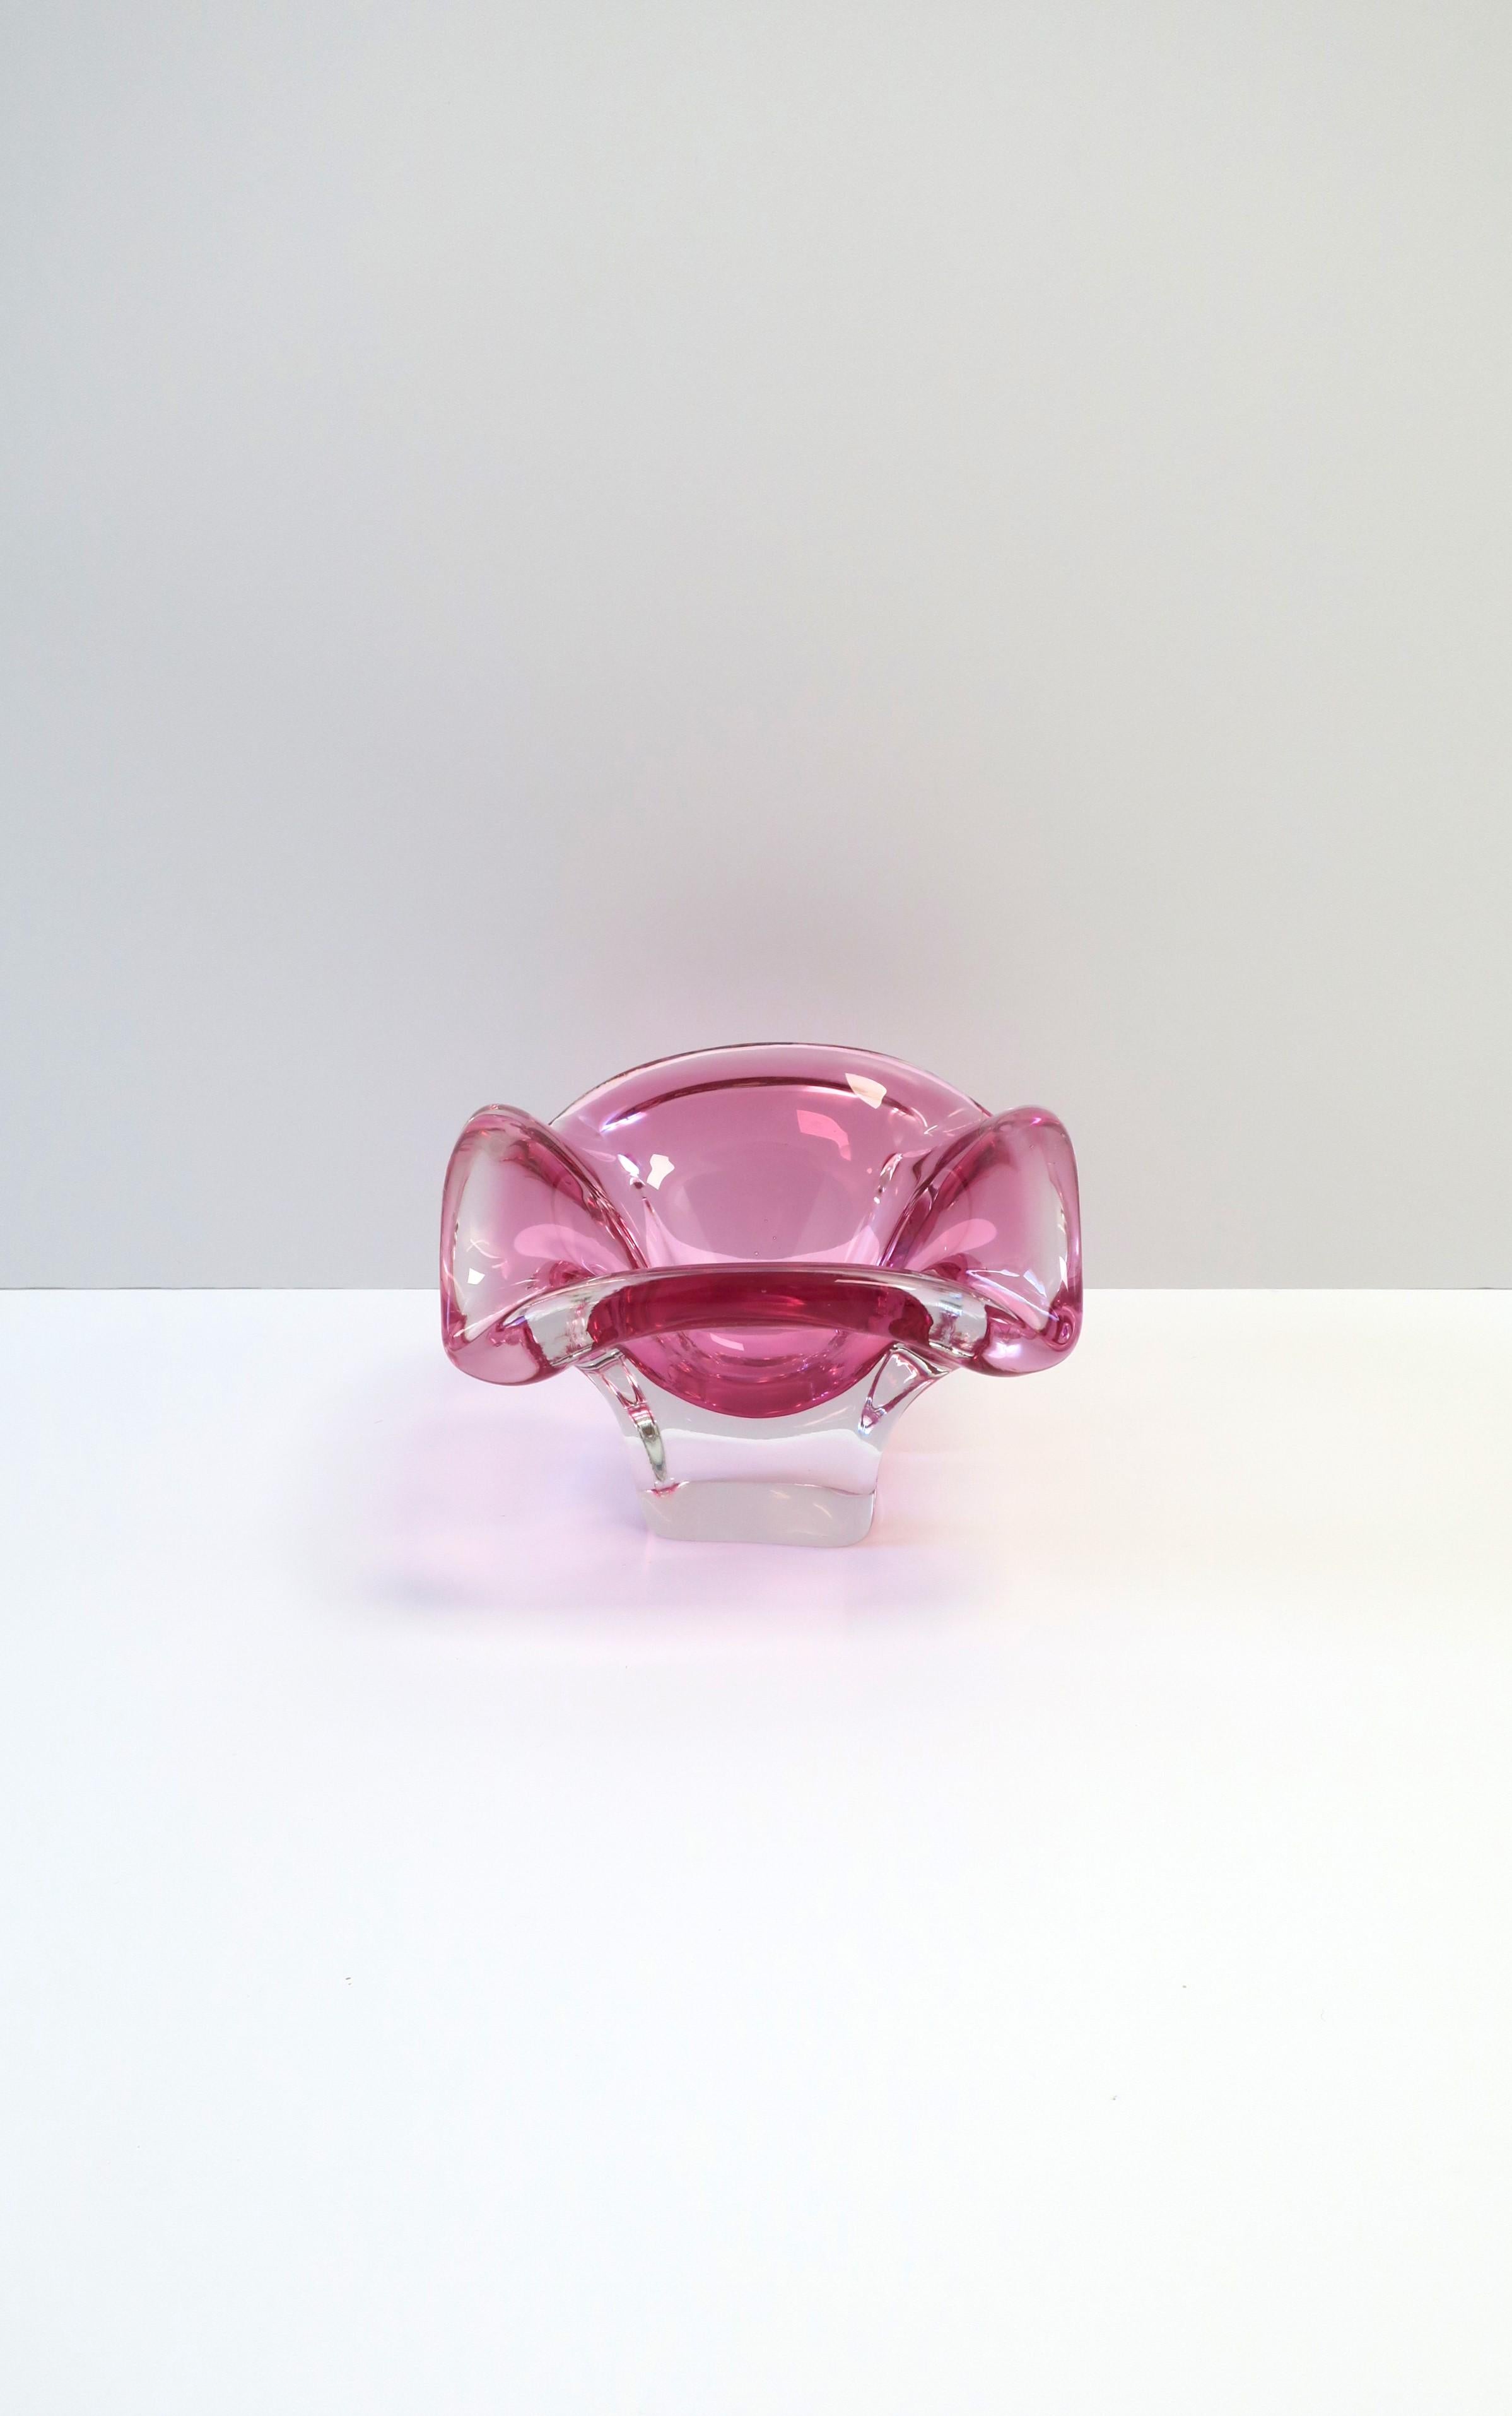 Eine große italienische Murano-Schale oder ein Aschenbecher aus transparentem/klarem und rosafarbenem Kunstglas, ca. Mitte des 20. Jahrhunderts, Italien. Die Schale hat ein Sockeldesign, weiche Ecken und ist für die Aufnahme eines Tabakprodukts